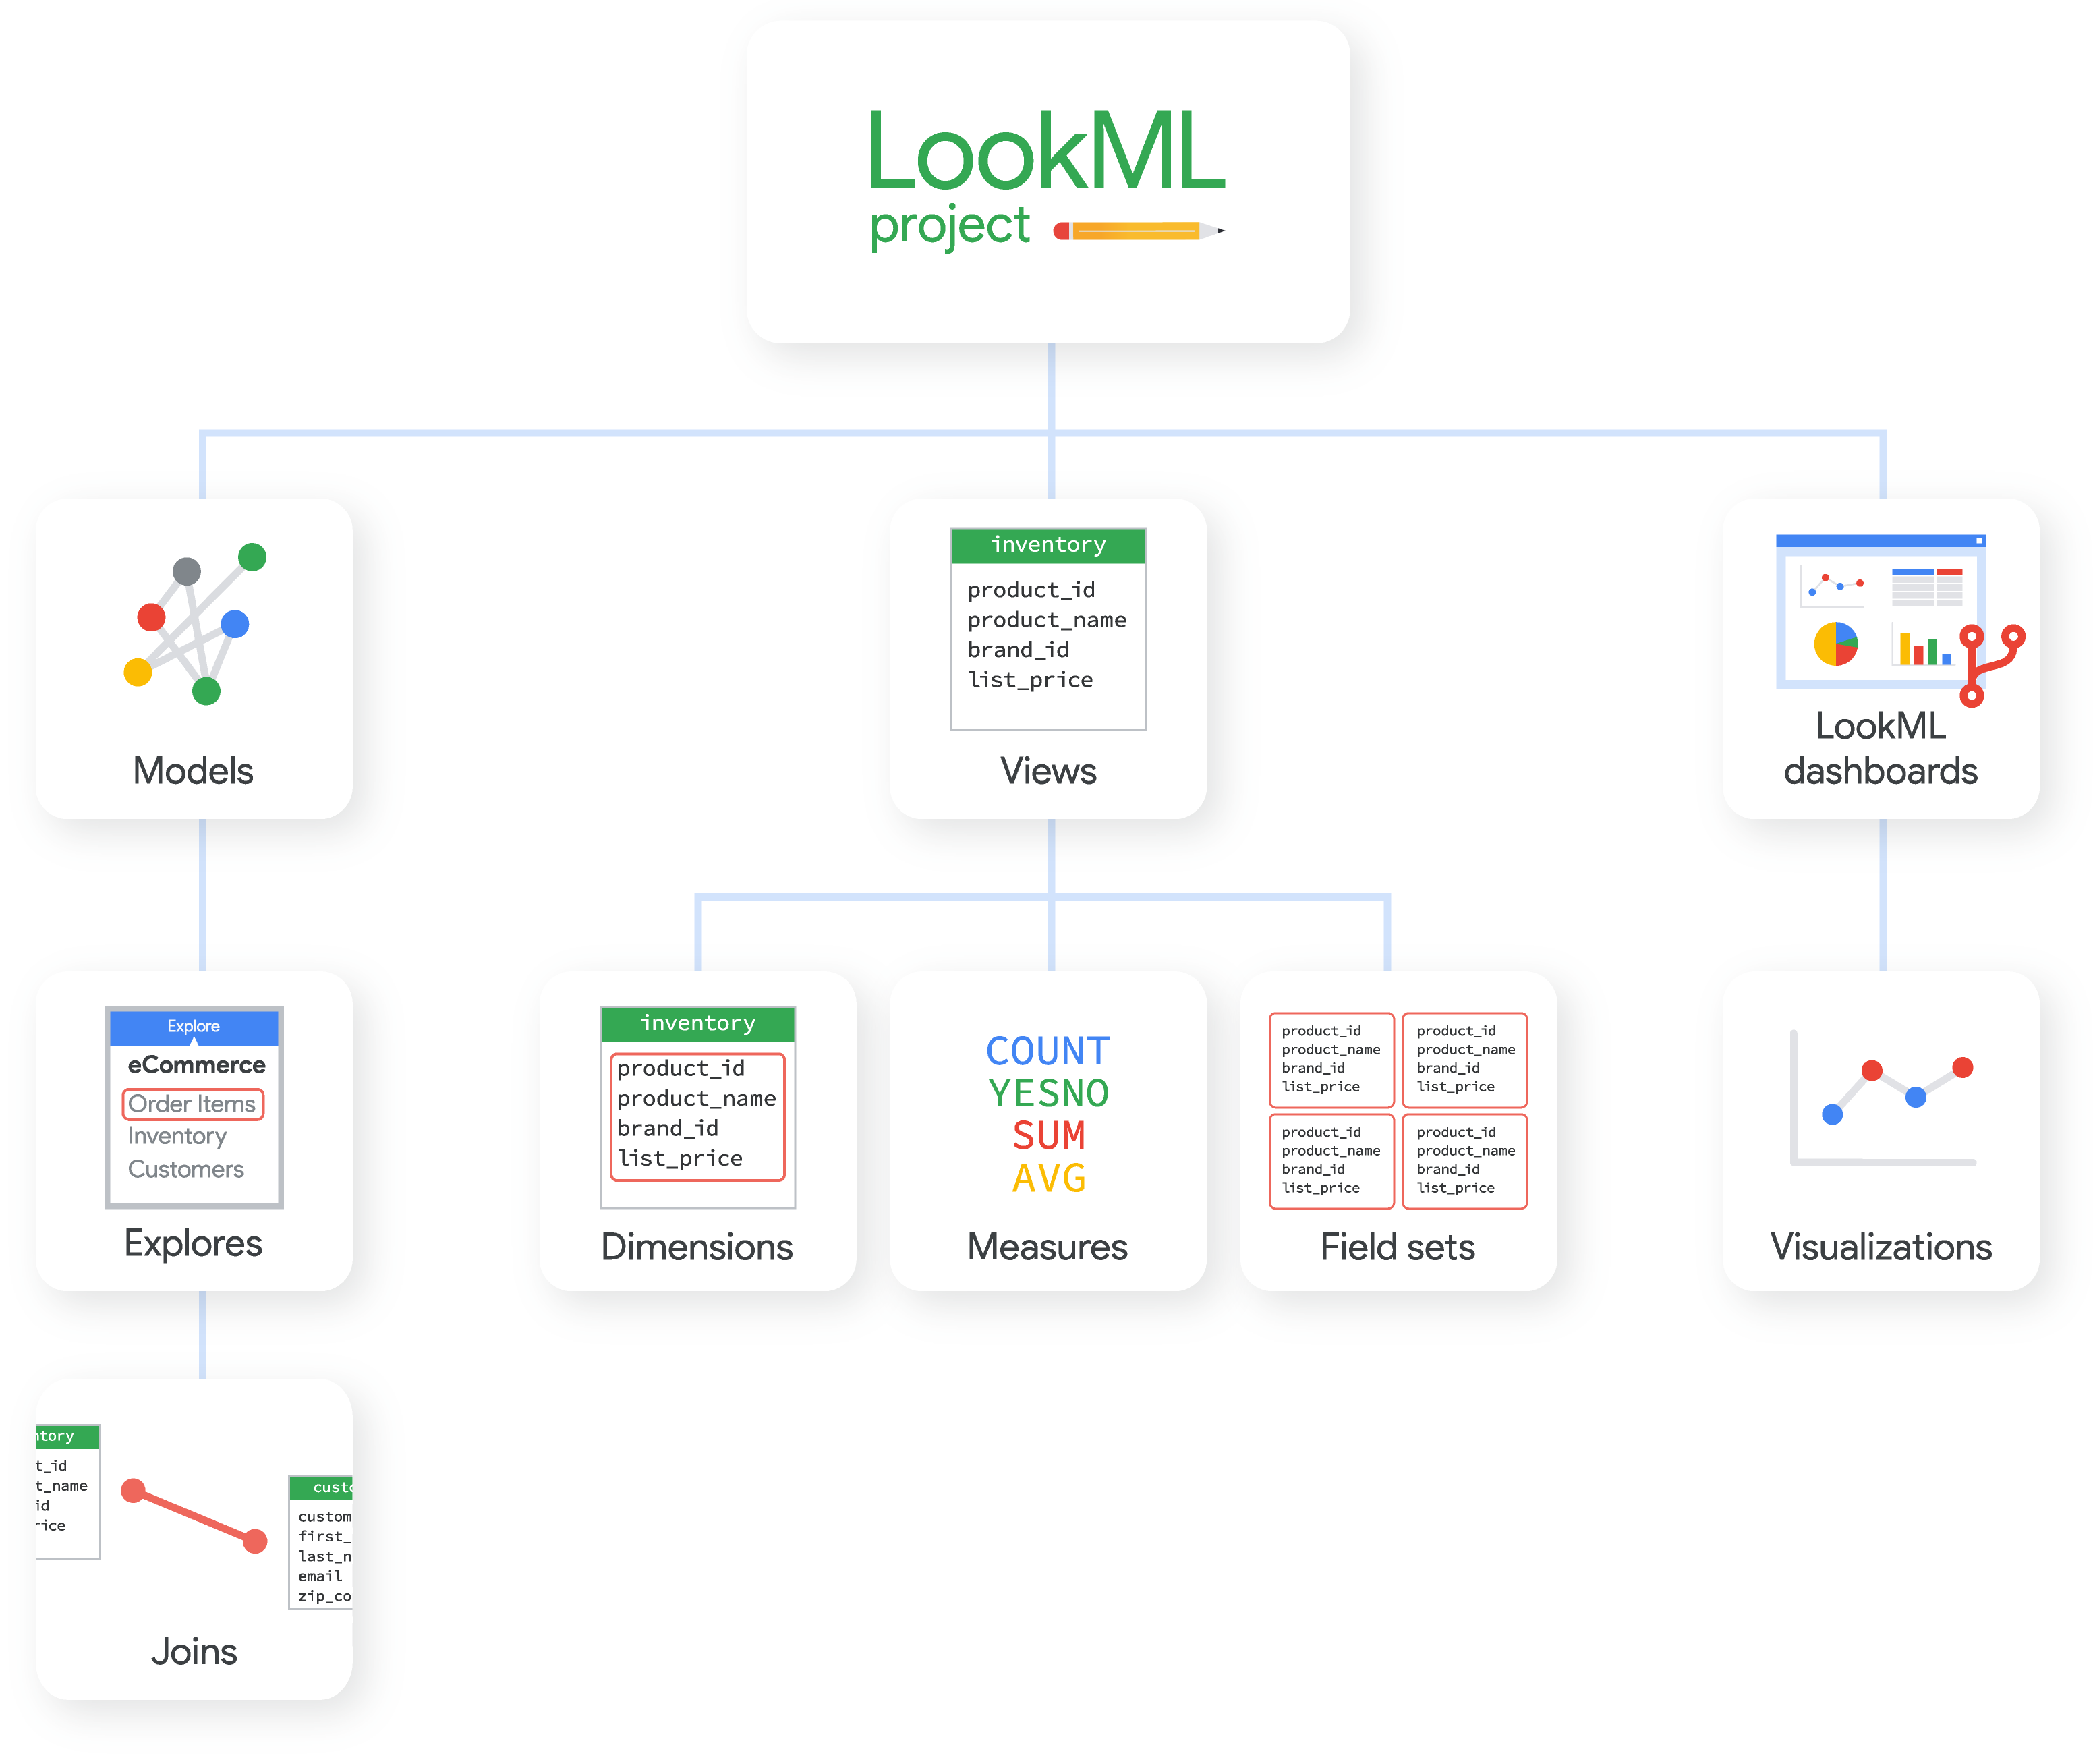 Um projeto do LookML pode conter modelos, visualizações e dashboards do LookML, cada um composto por outros elementos do LookML.